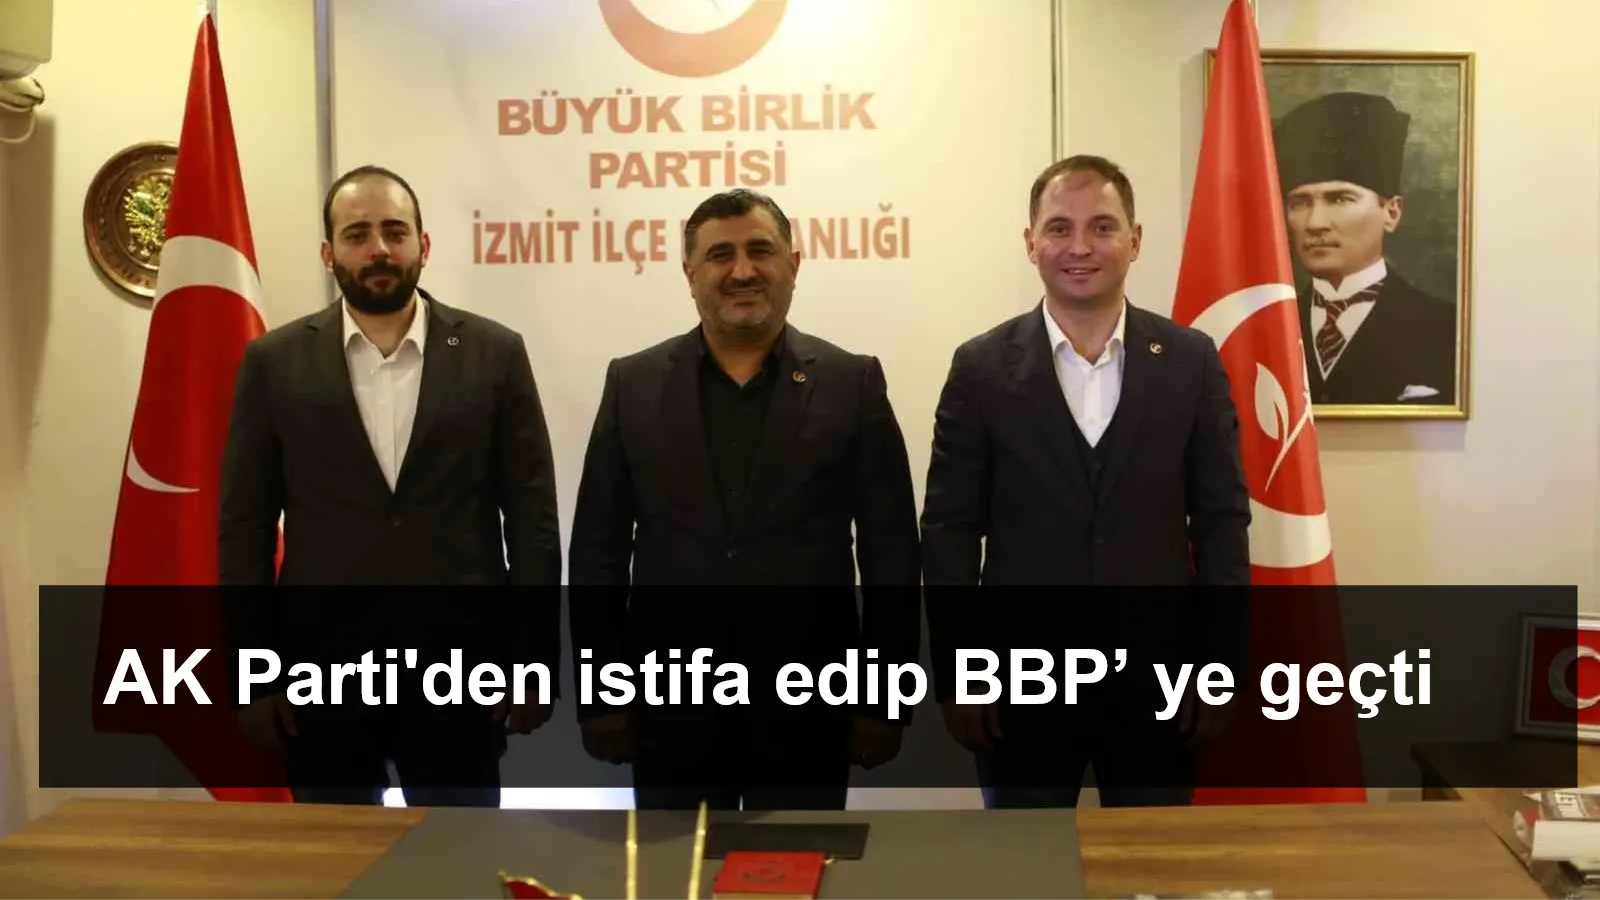 Kocaelispor’un eski yöneticisi AK Parti'den istifa edip BBP’ ye geçti